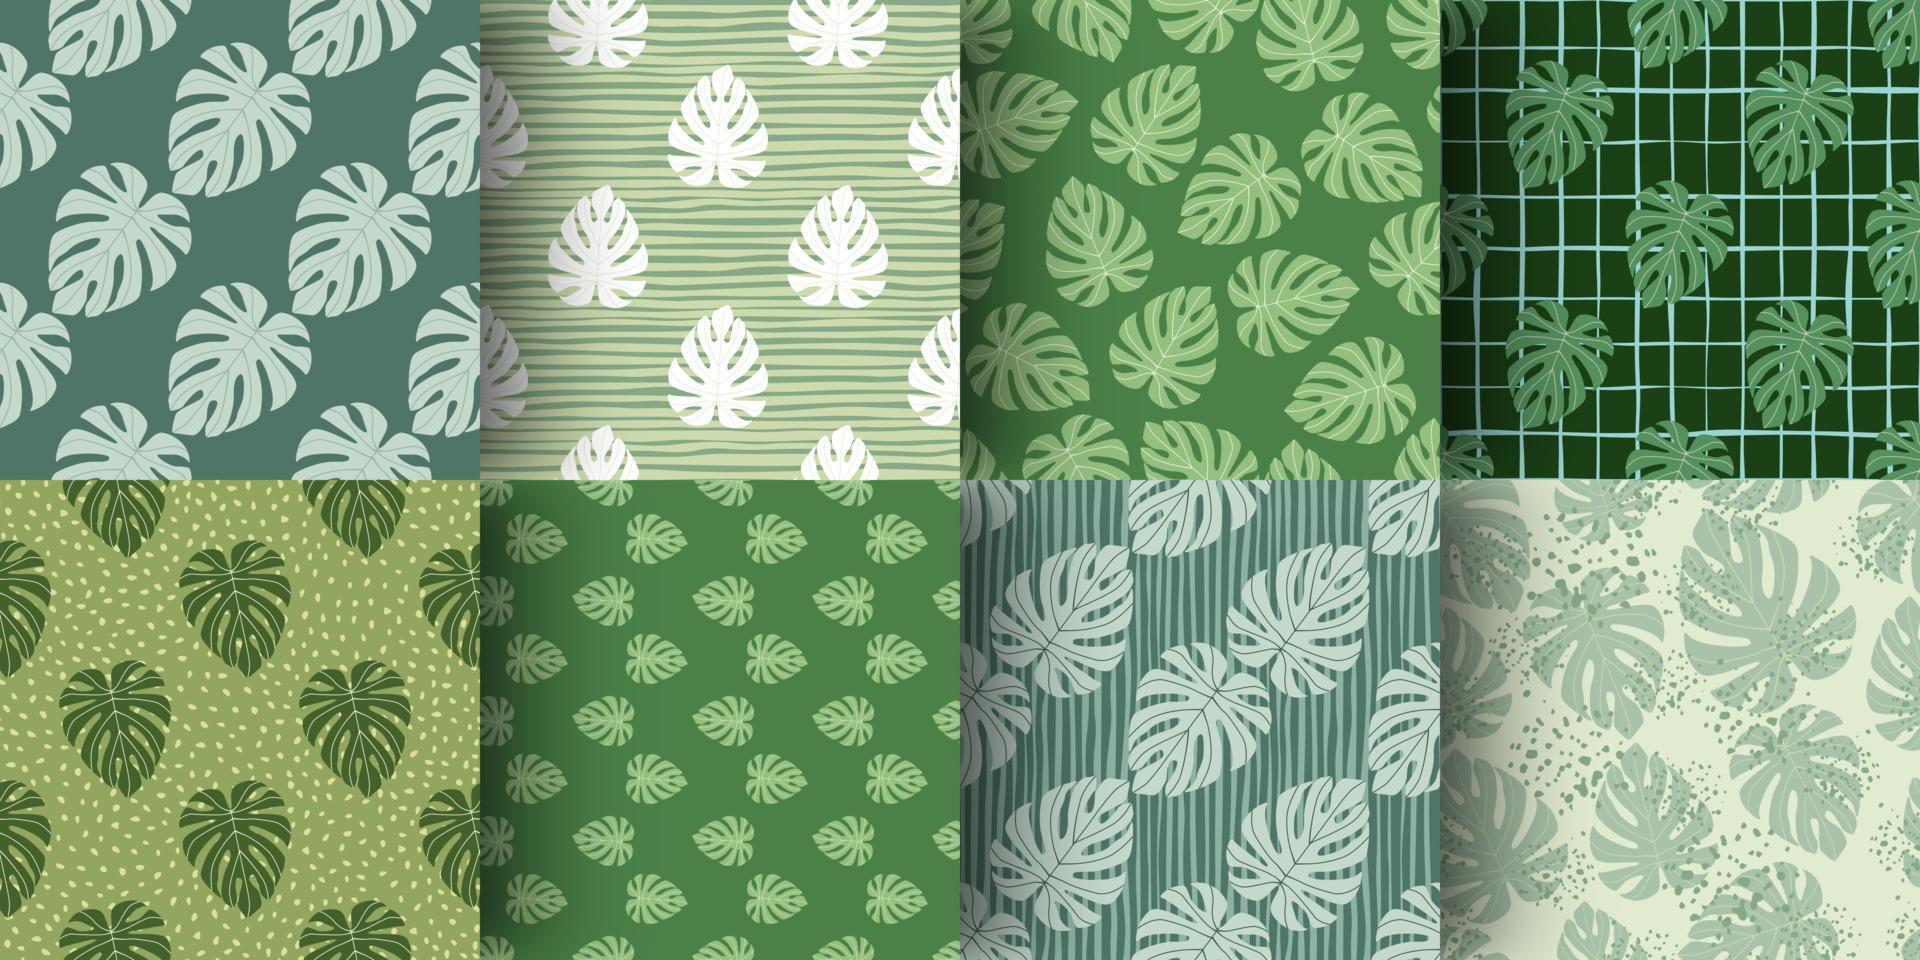 set van monstera blad eenvoudige vormen naadloze doodle patroon. groene tinten palet tropische botanische kunstwerken collectie. vector